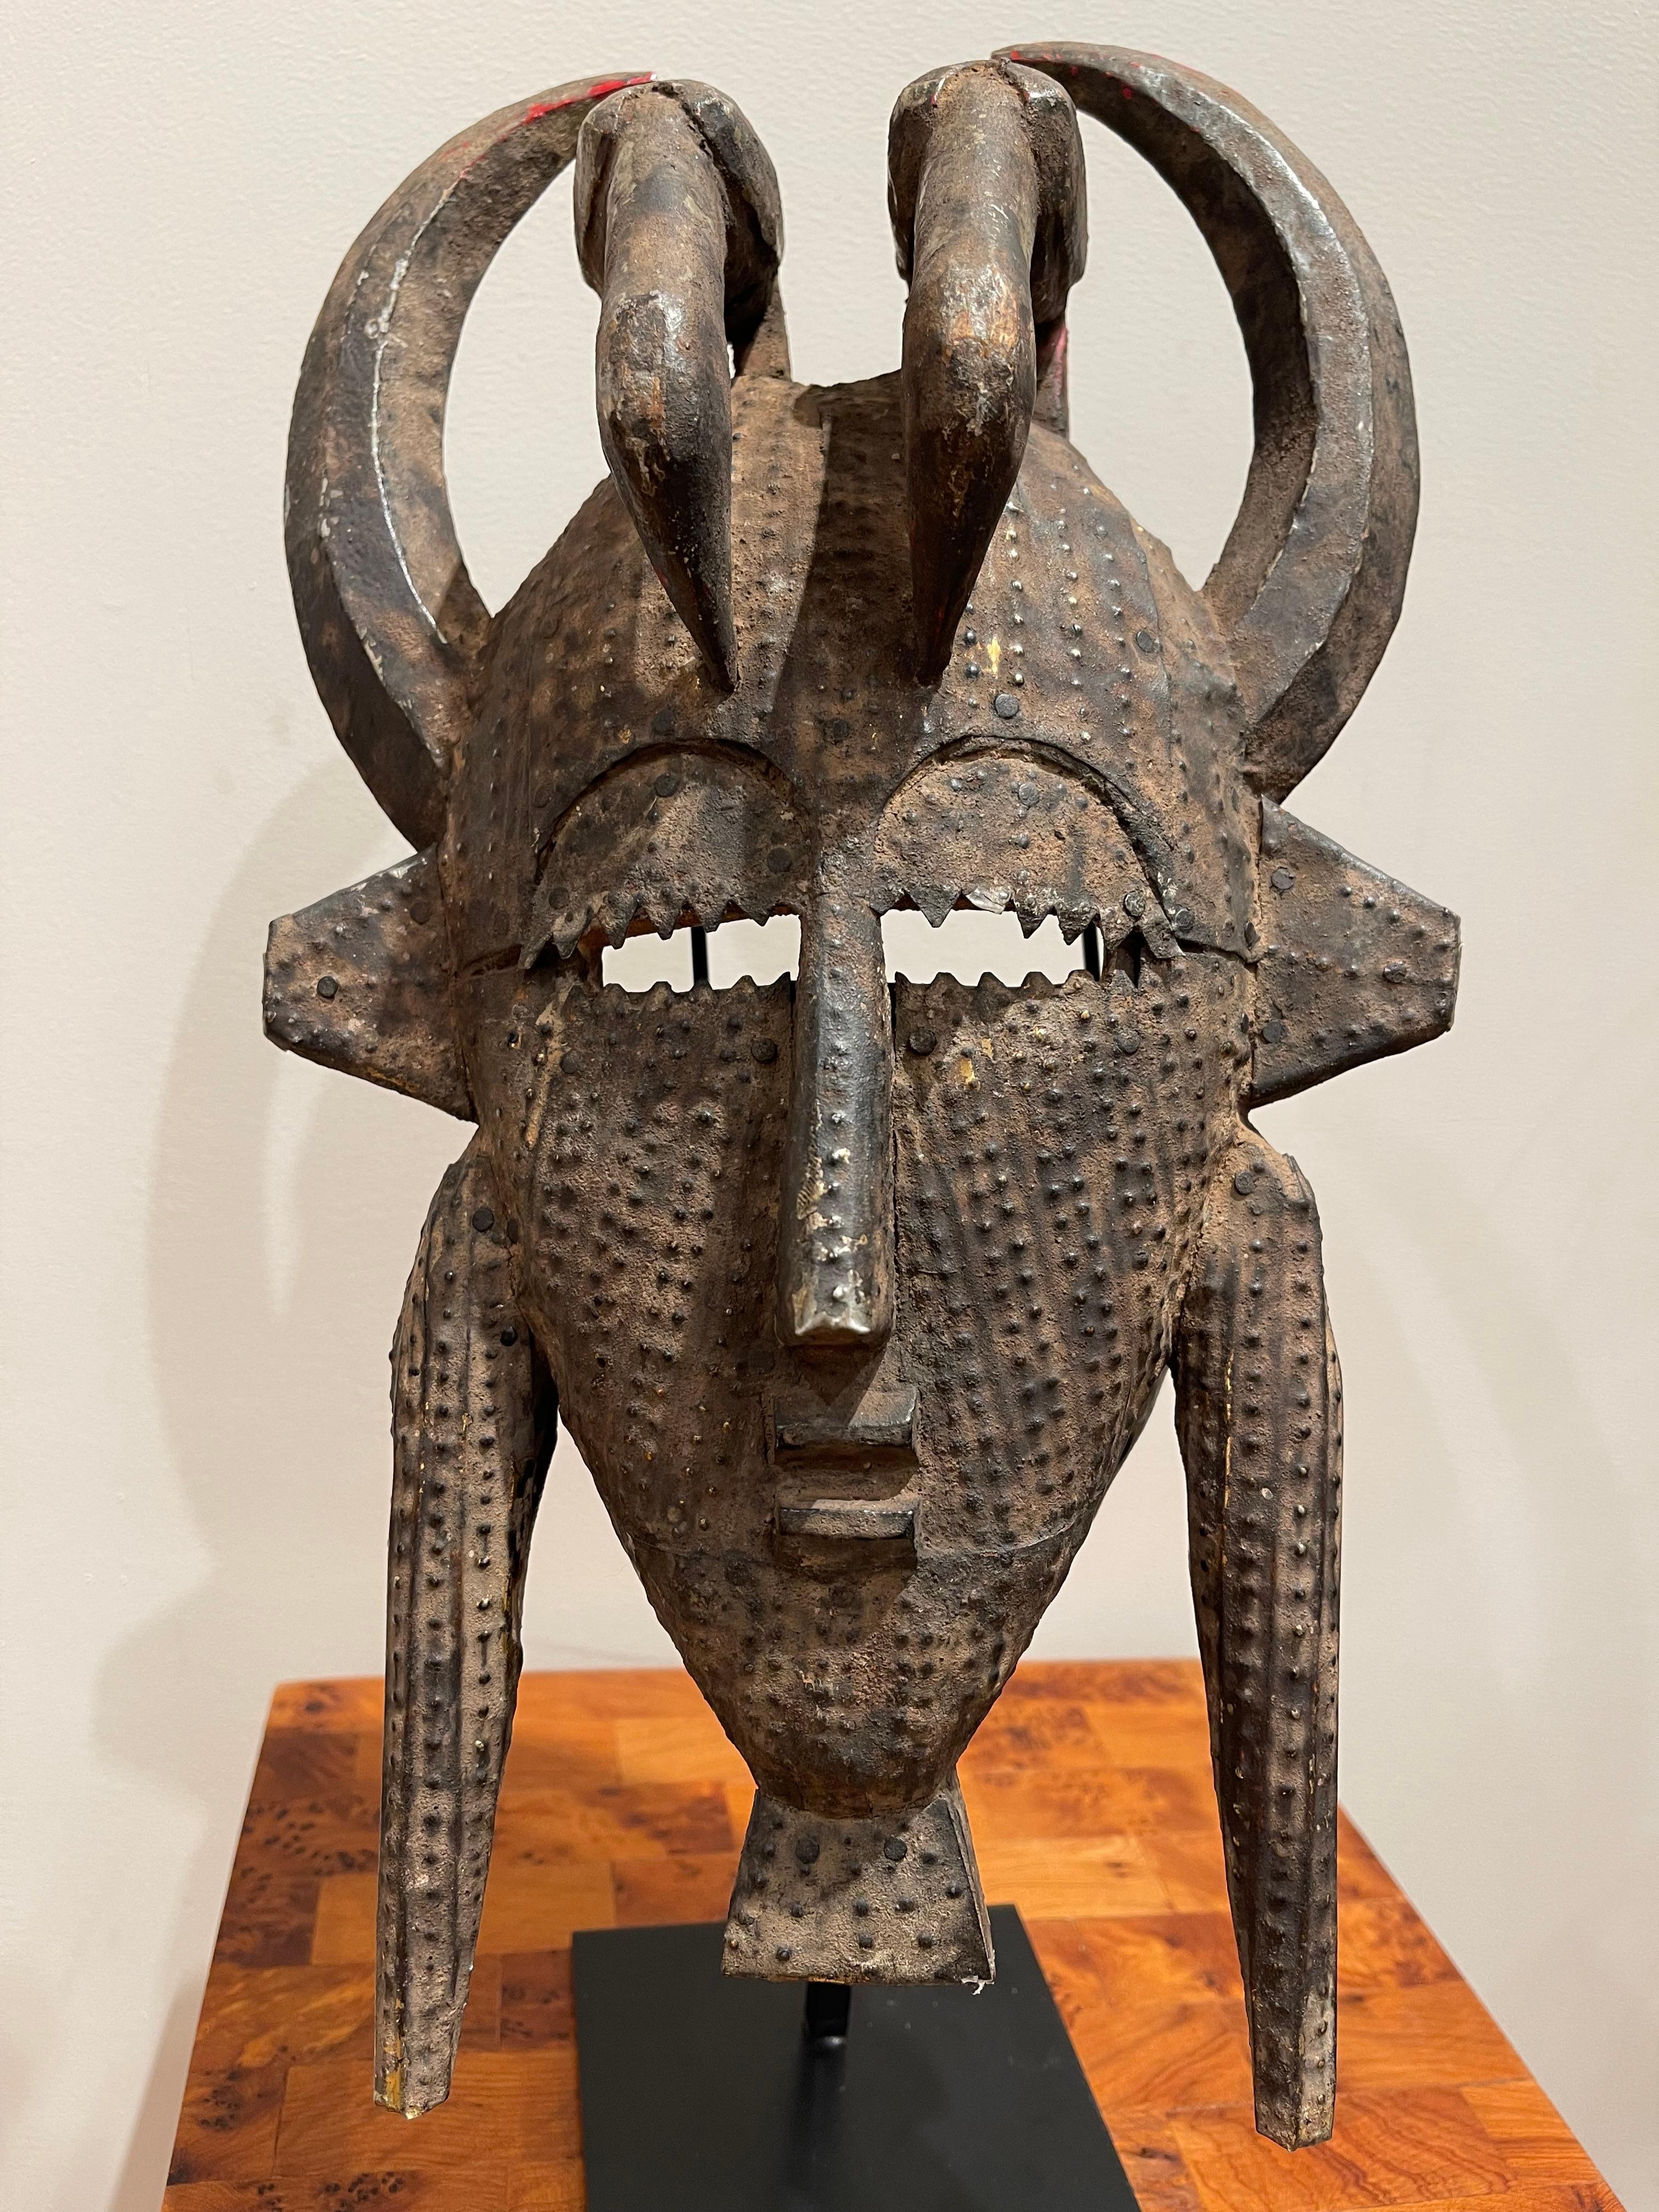 Prächtige Kpélié-Maske, Bevölkerung von Sénoufo, Elfenbeinküste 1950
Kpélié-Maske, Holz mit Kupfer überzogen 
Abmessungen 36,5 x 14,5 cm / 14,17 x 5,51 Zoll

Die Bevölkerung, die die Sénoufo-Sprache spricht, ist über ein riesiges Gebiet verteilt,